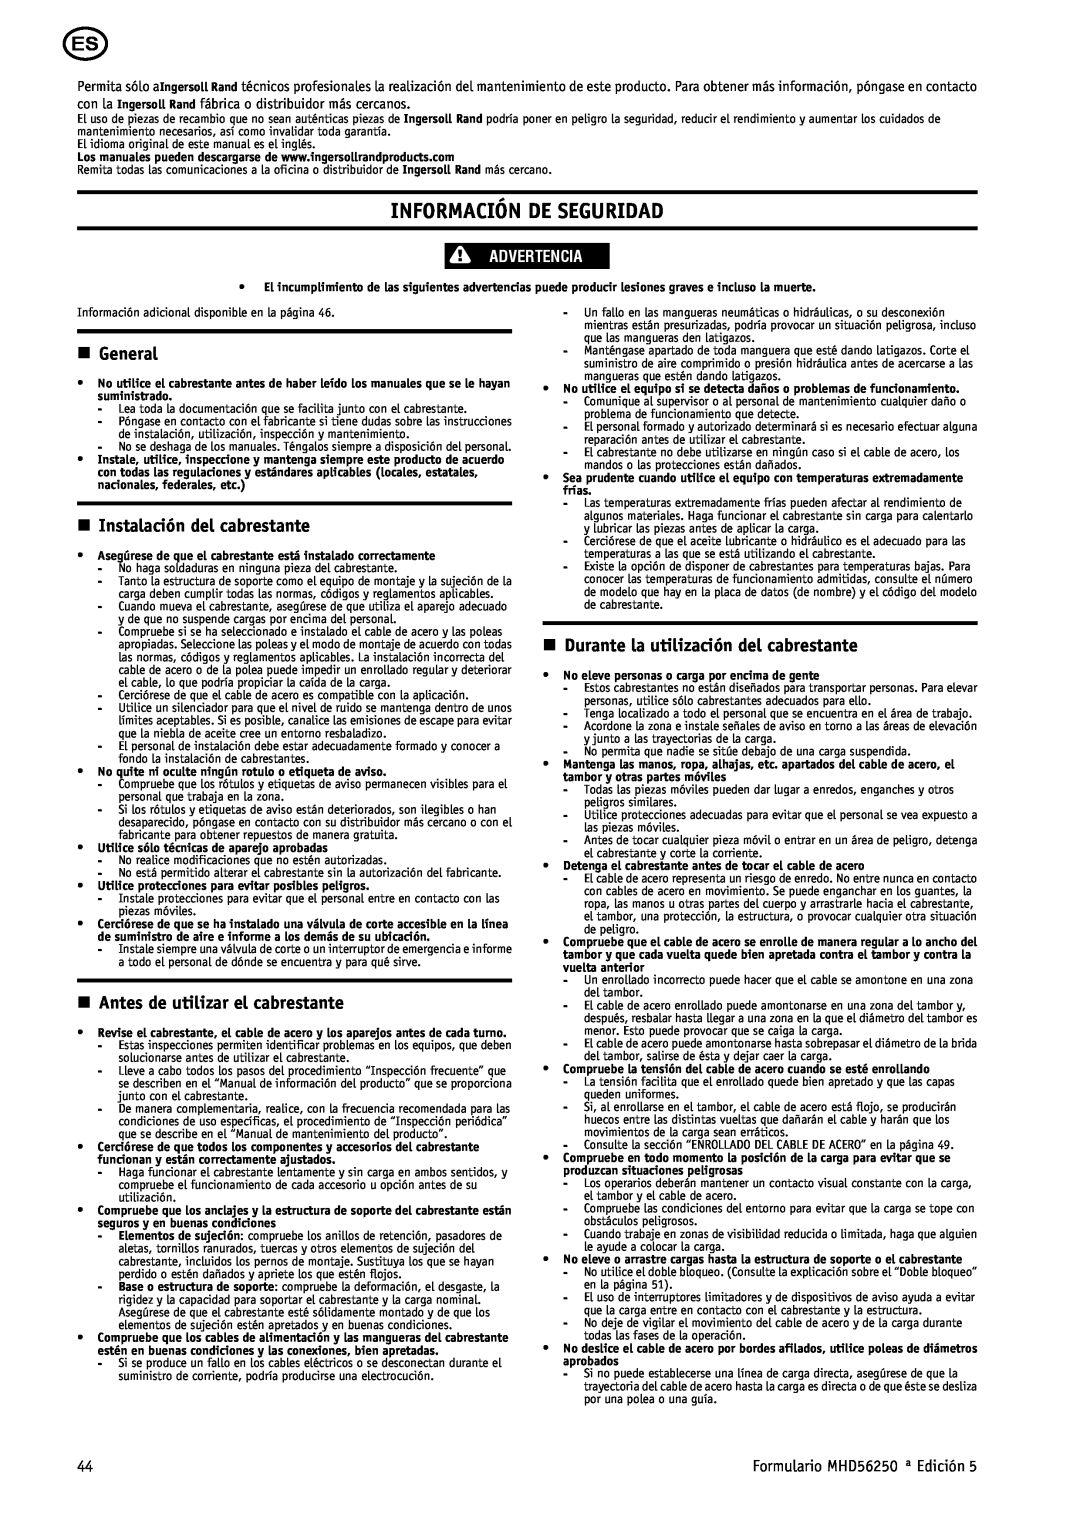 Ingersoll-Rand MHD56250 manual Información De Seguridad, n General, n Instalación del cabrestante, Advertencia 